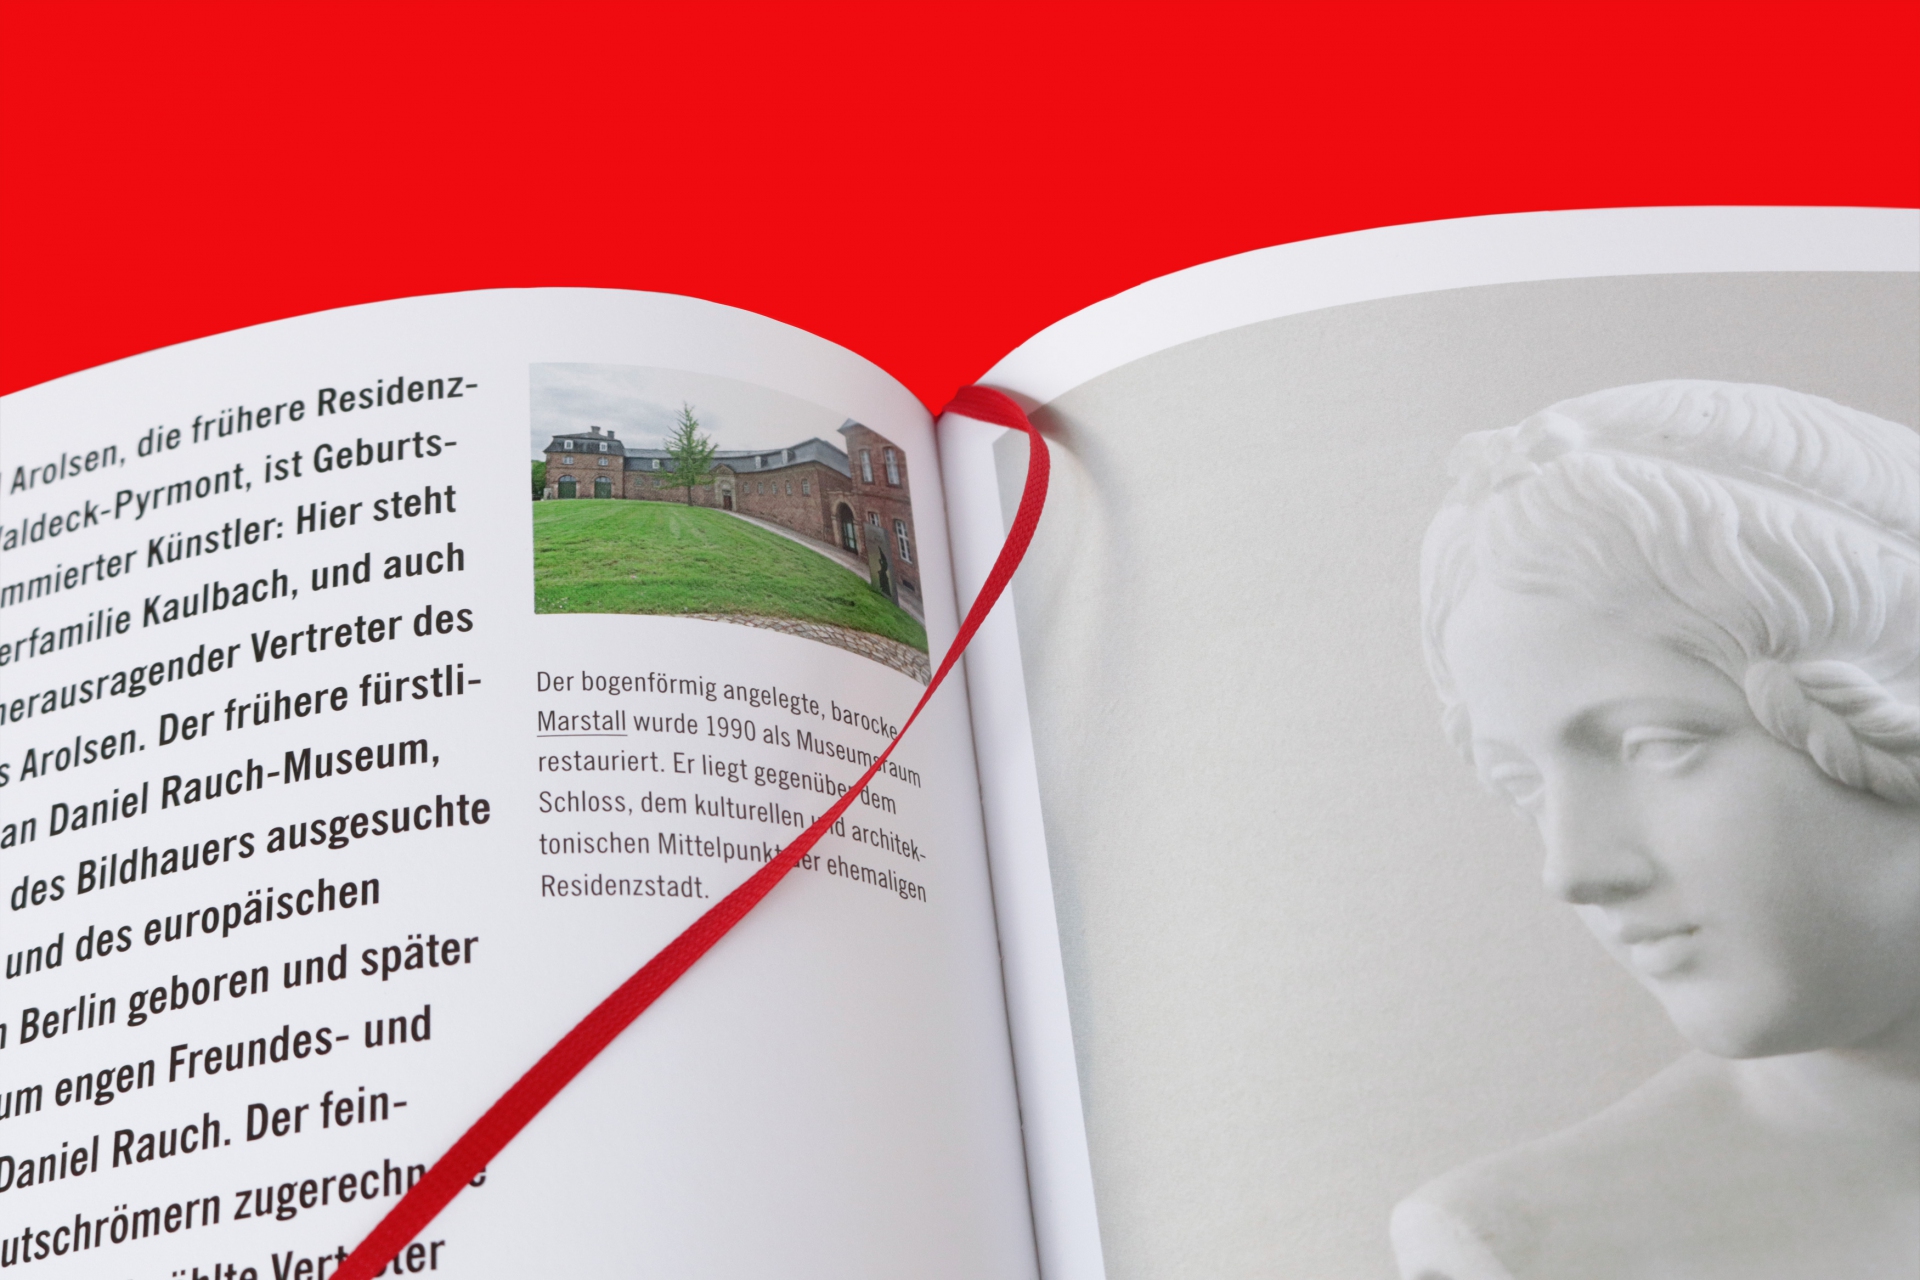 Buchgestaltung Jubiläumsbroschüre 30 Jahre Hessische Kulturstiftung, Detail mit Lesebändchen